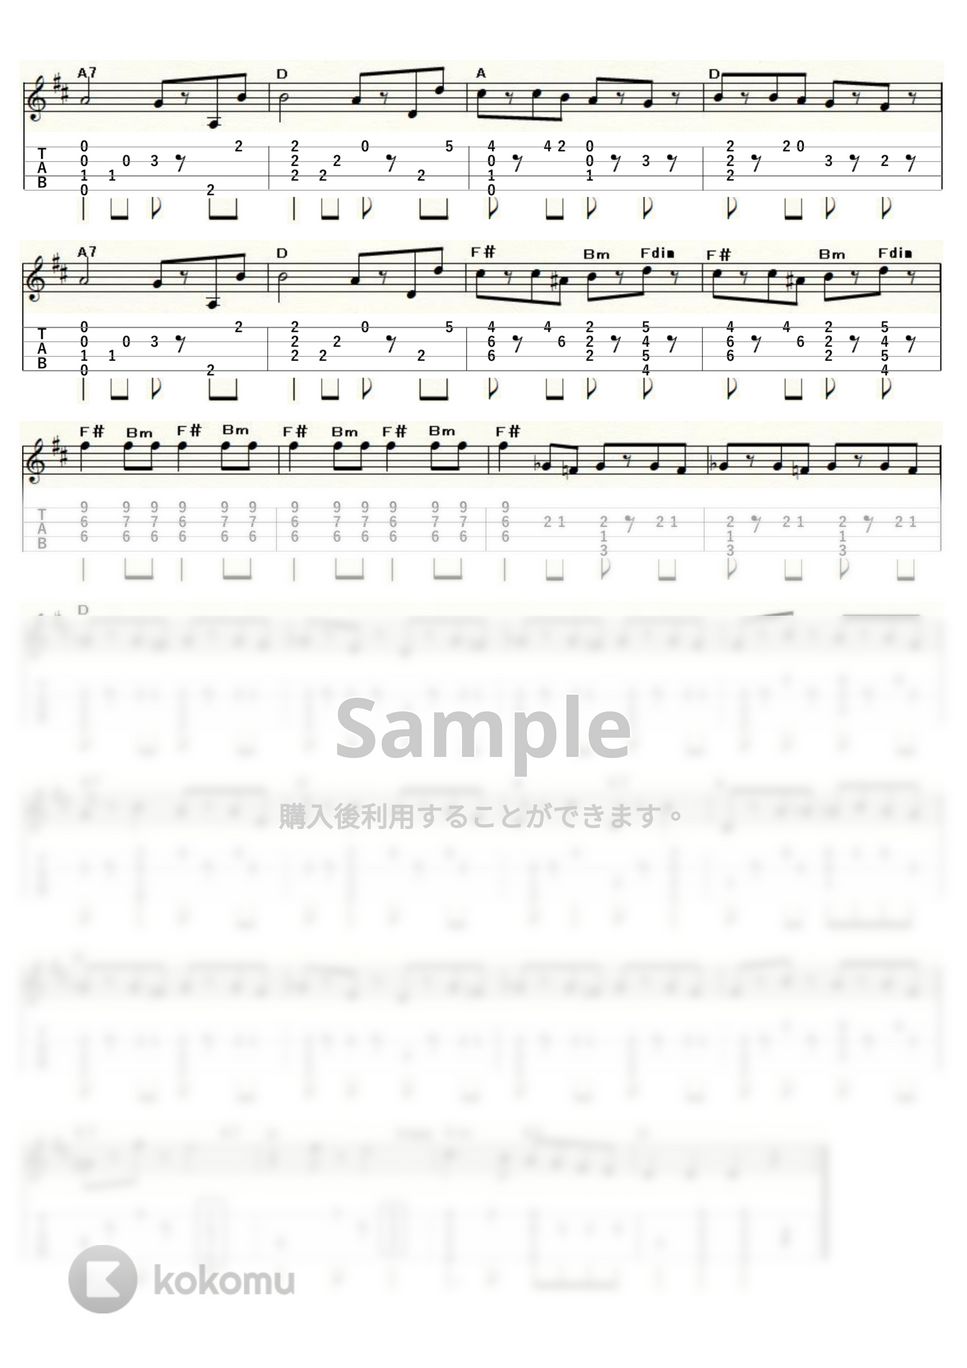 ヨハン・シュトラウス1世 - ラデツキー行進曲 (ｳｸﾚﾚｿﾛ / Low-G / 中～上級) by ukulelepapa